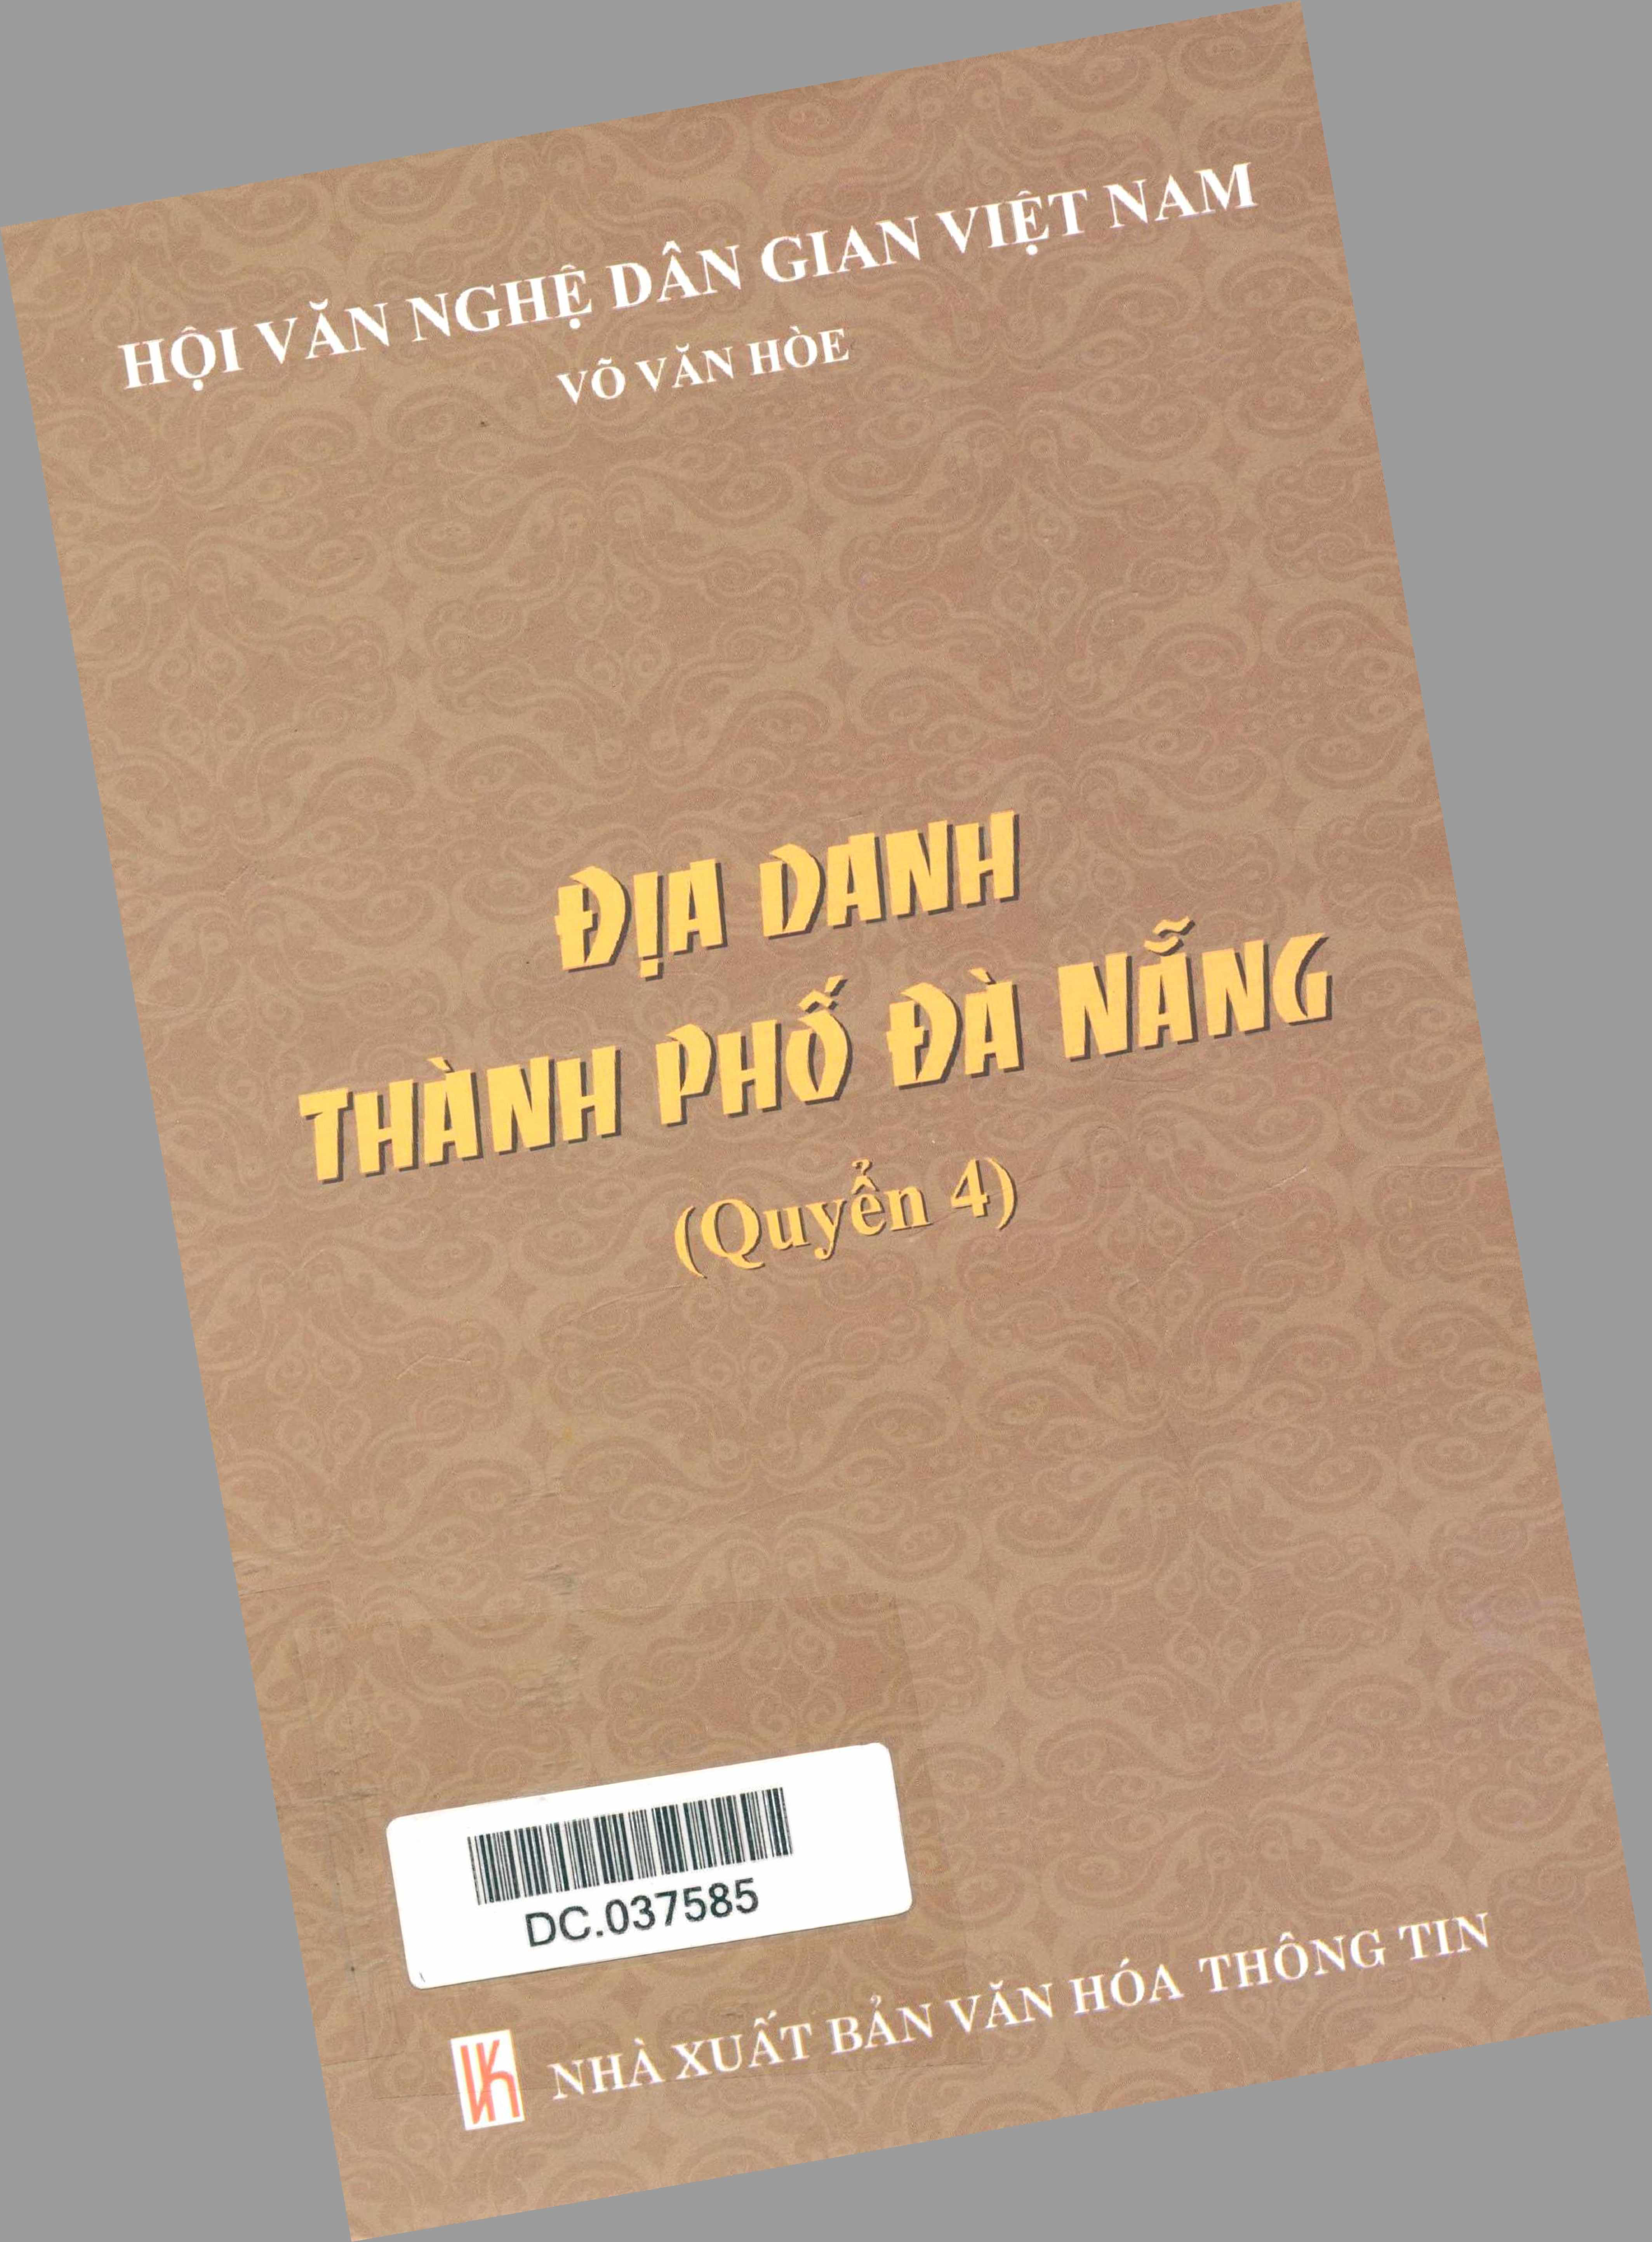 Địa danh thành phố Đà Nẵng (Quyển 4)